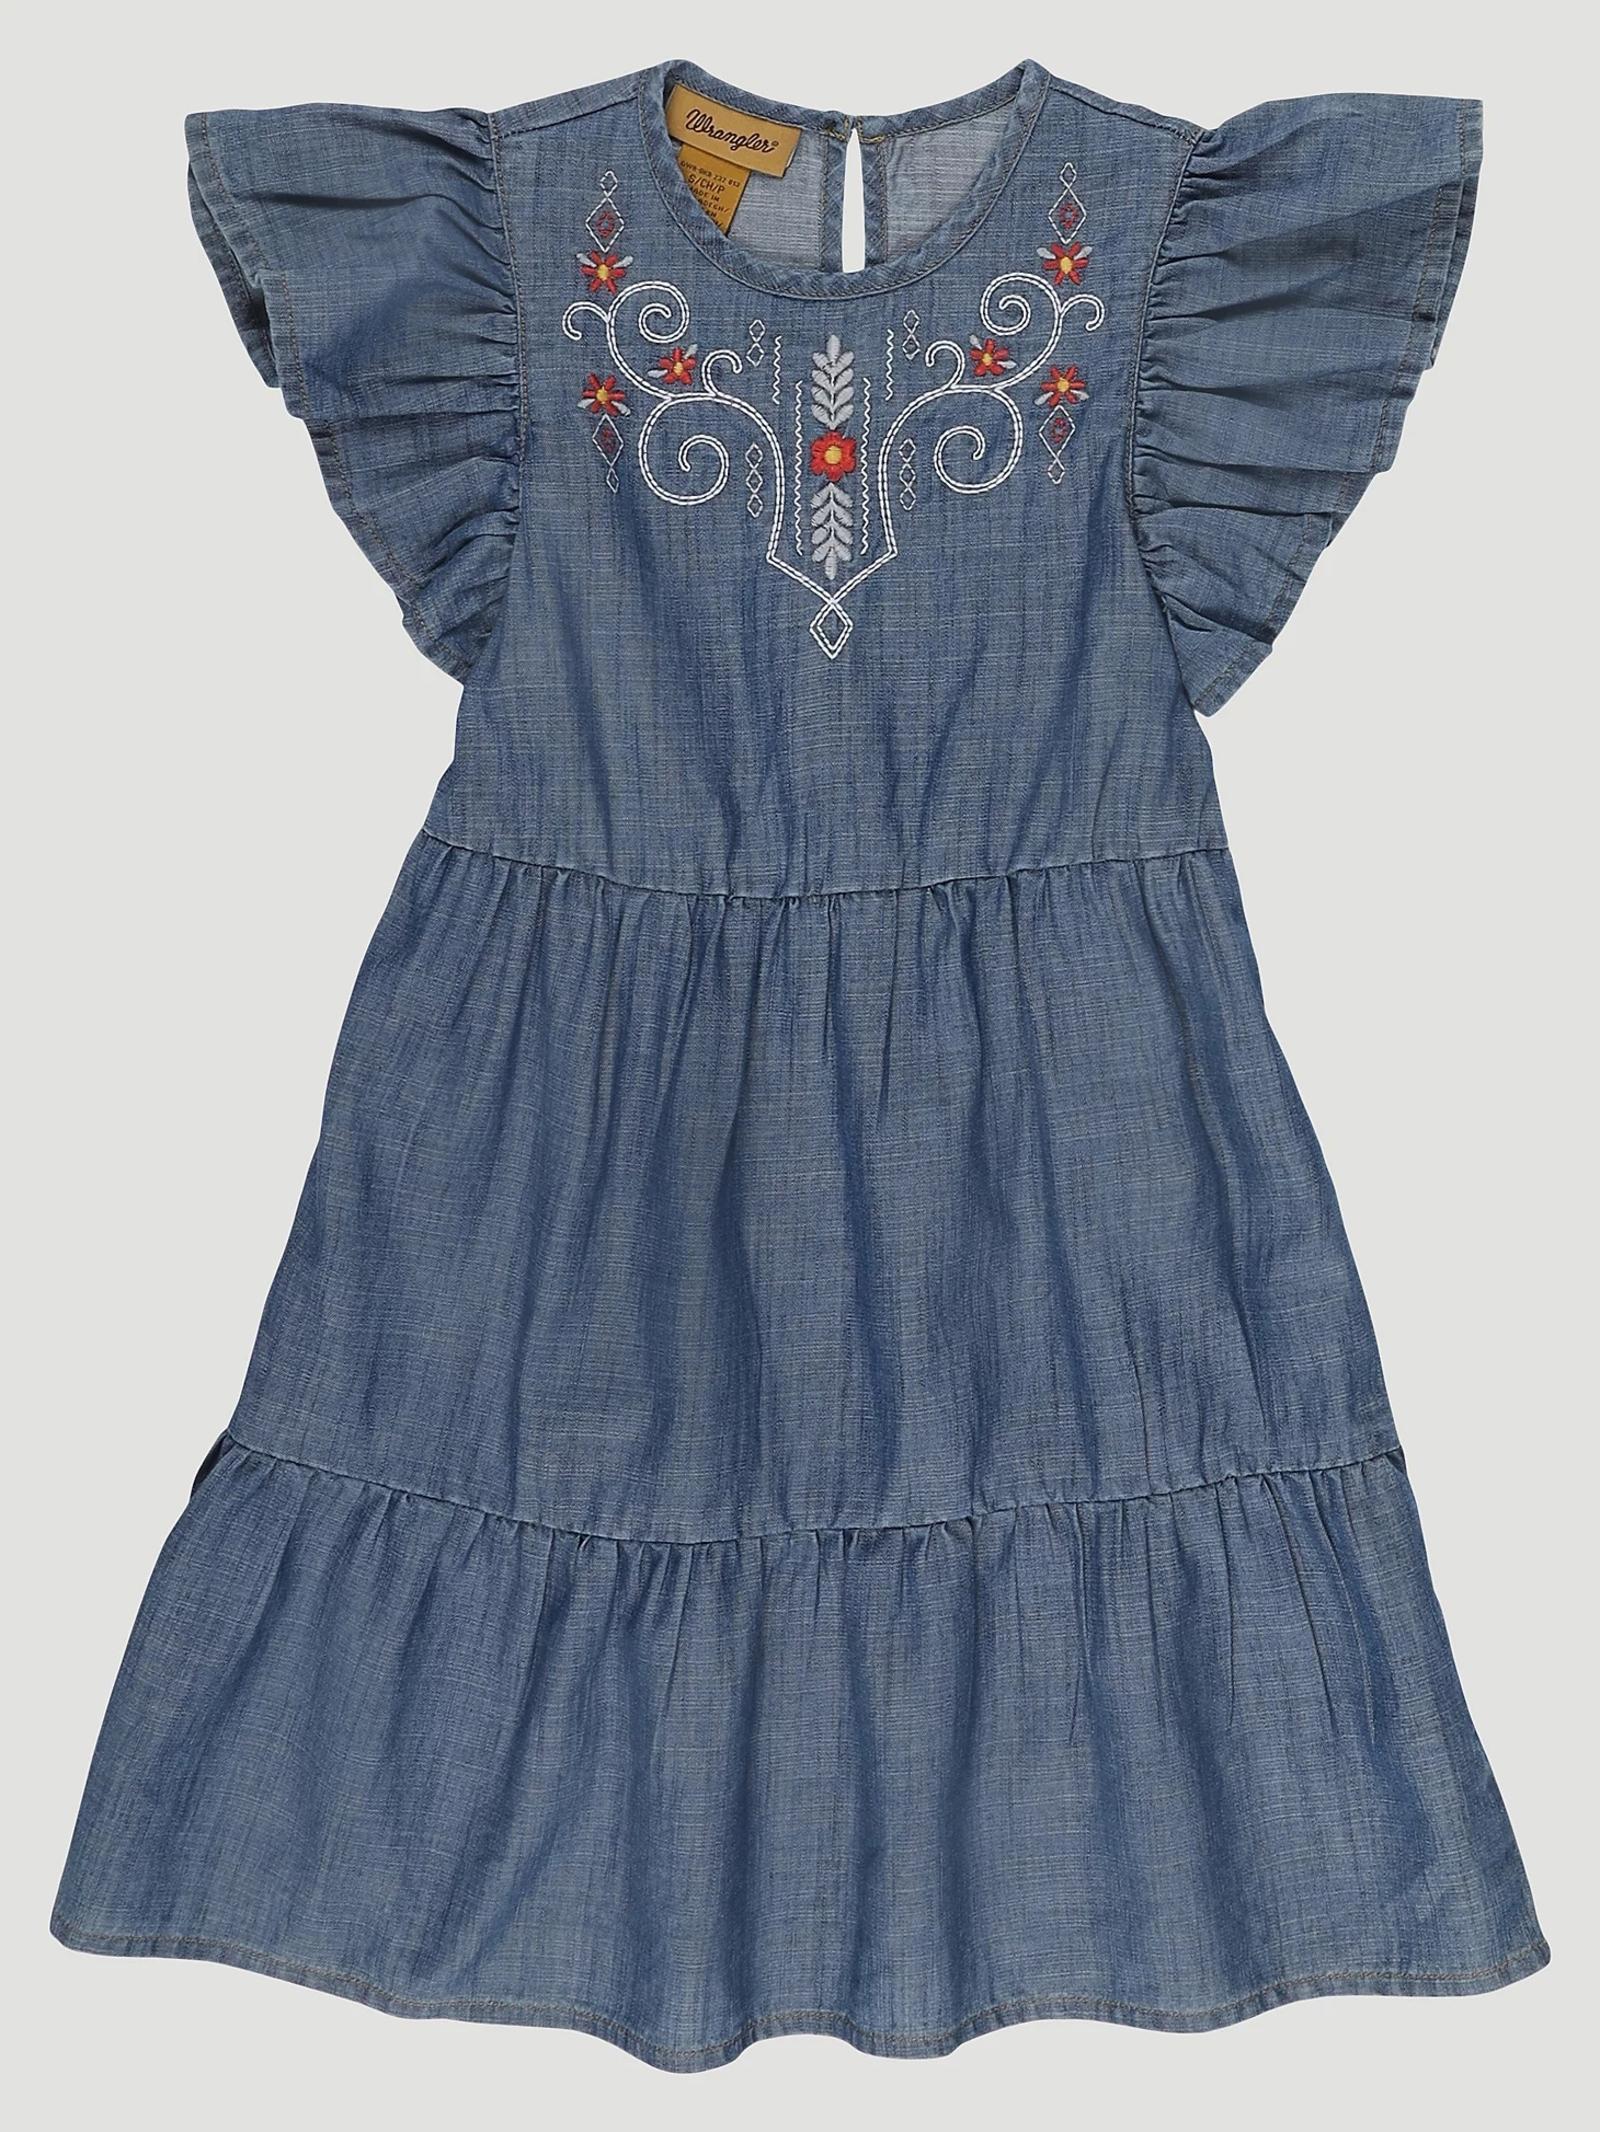 Wrangler Girls Ruffle Sleeve Embroidered Denim Dress